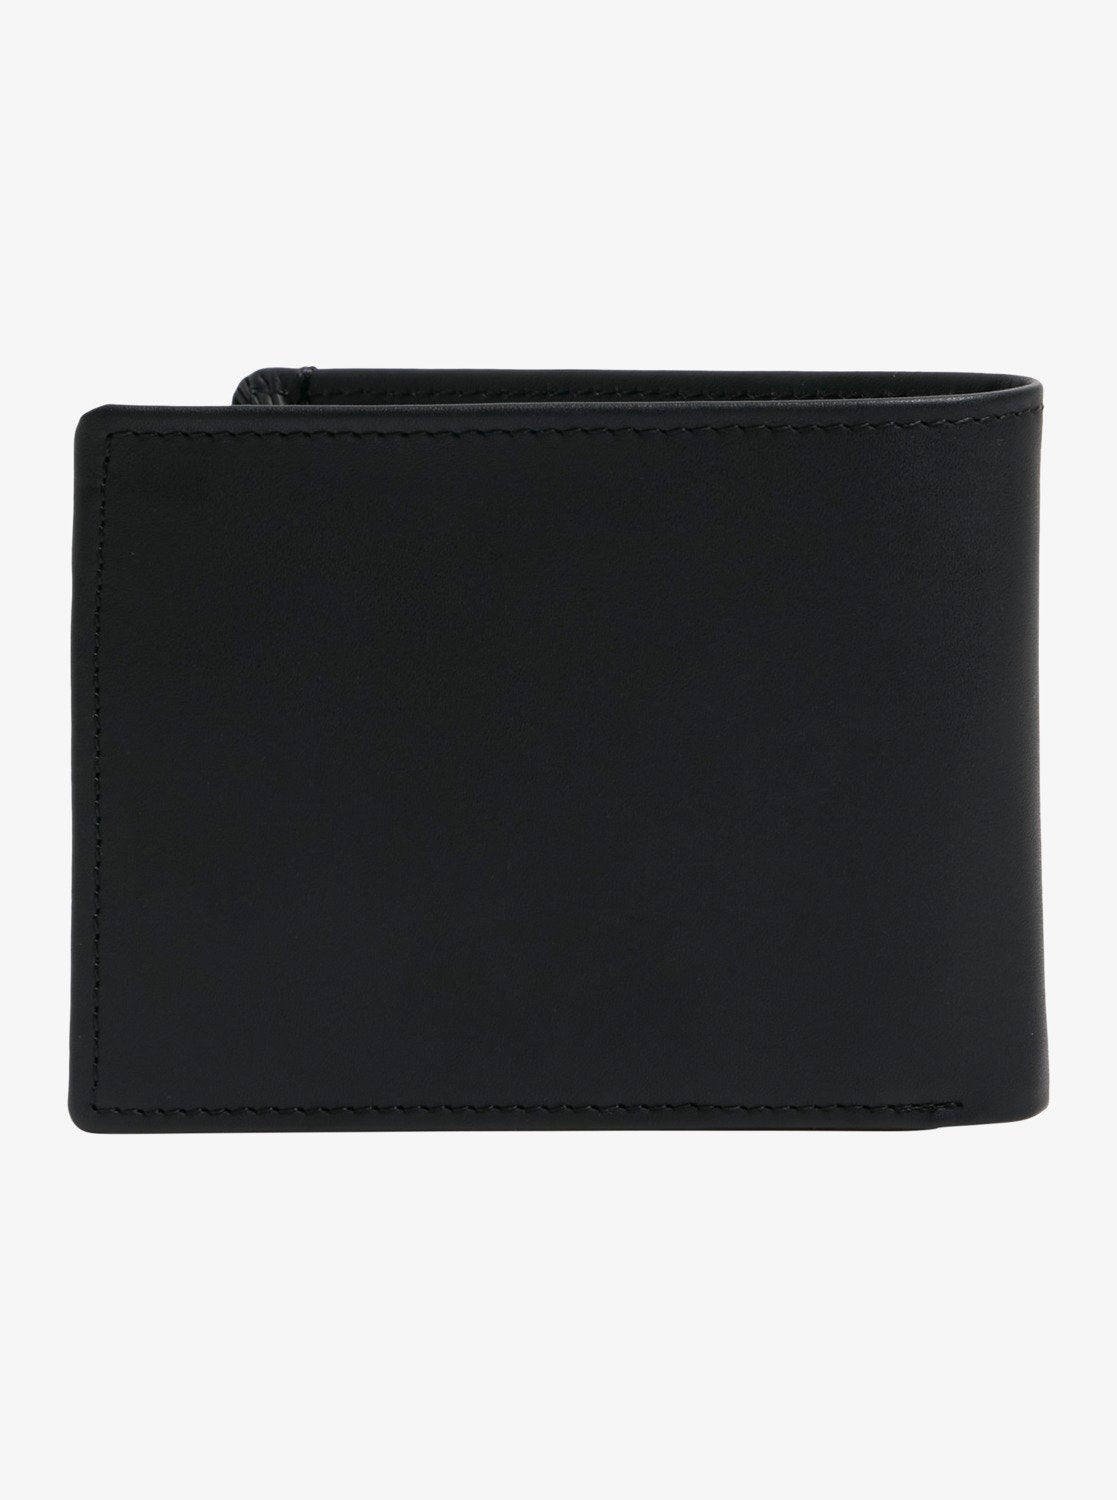 Quiksilver New Miss Dollar Bi Fold Leather Wallet in Black